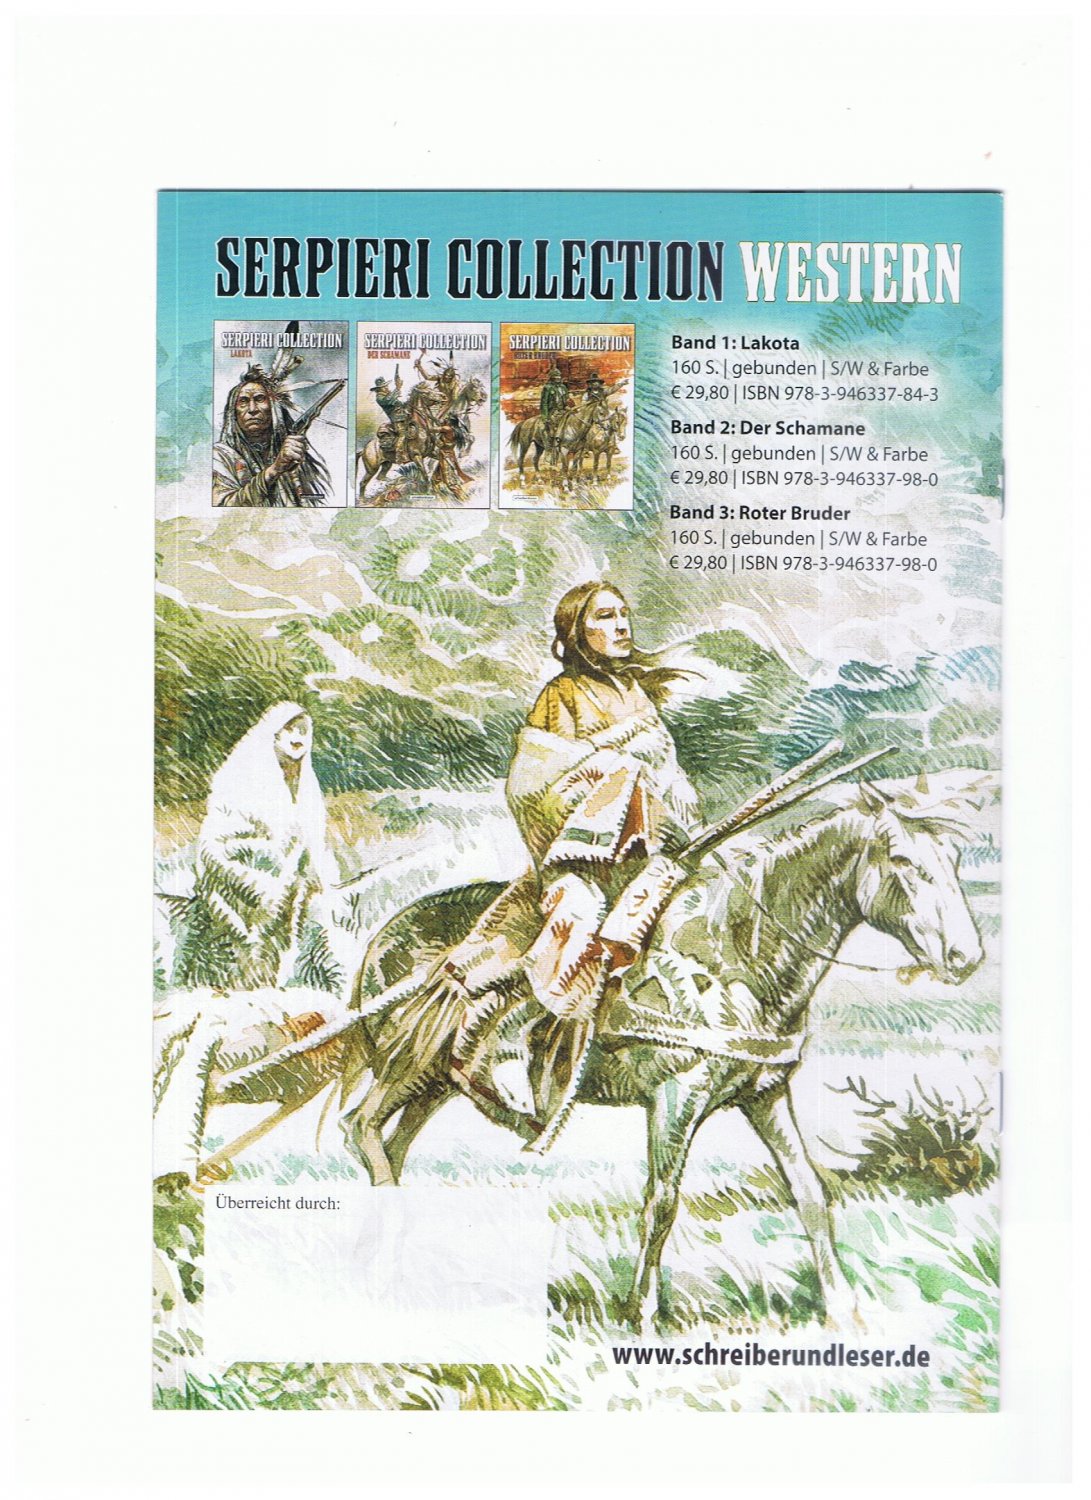 Der Schamane 2 Serpieri Collection Western 